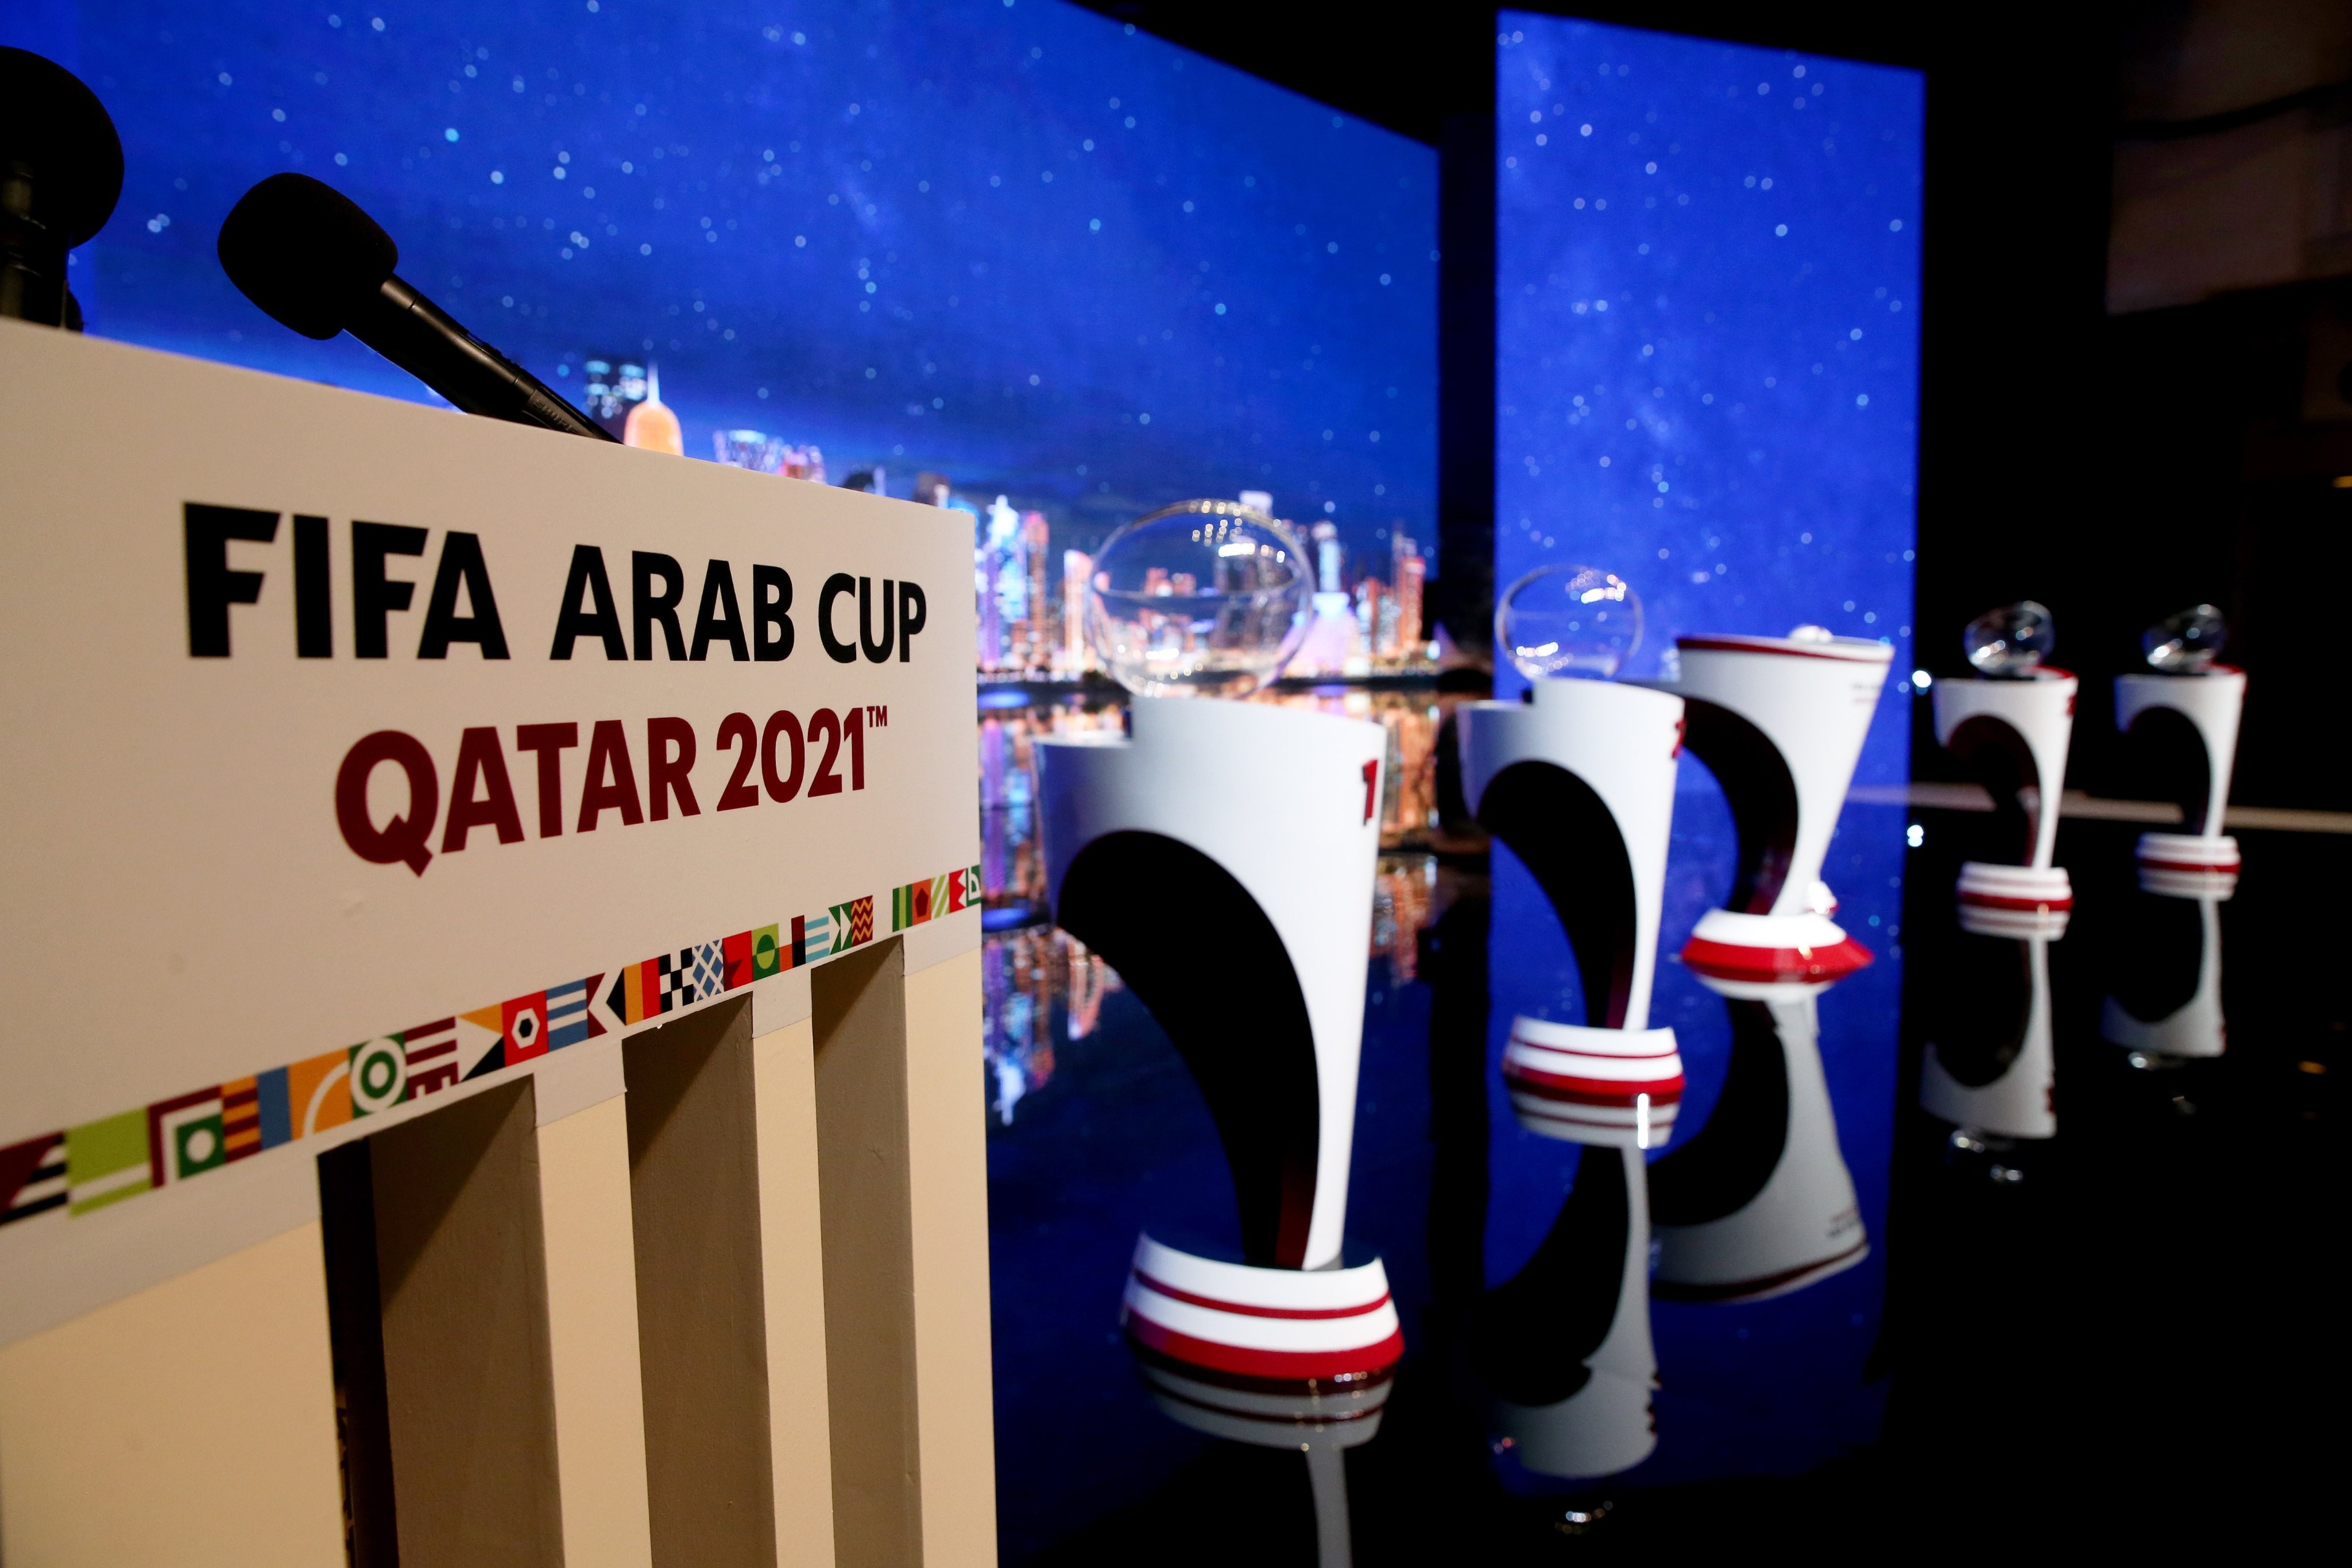 العرب ٢٠٢١ كاس قطر كأس العرب